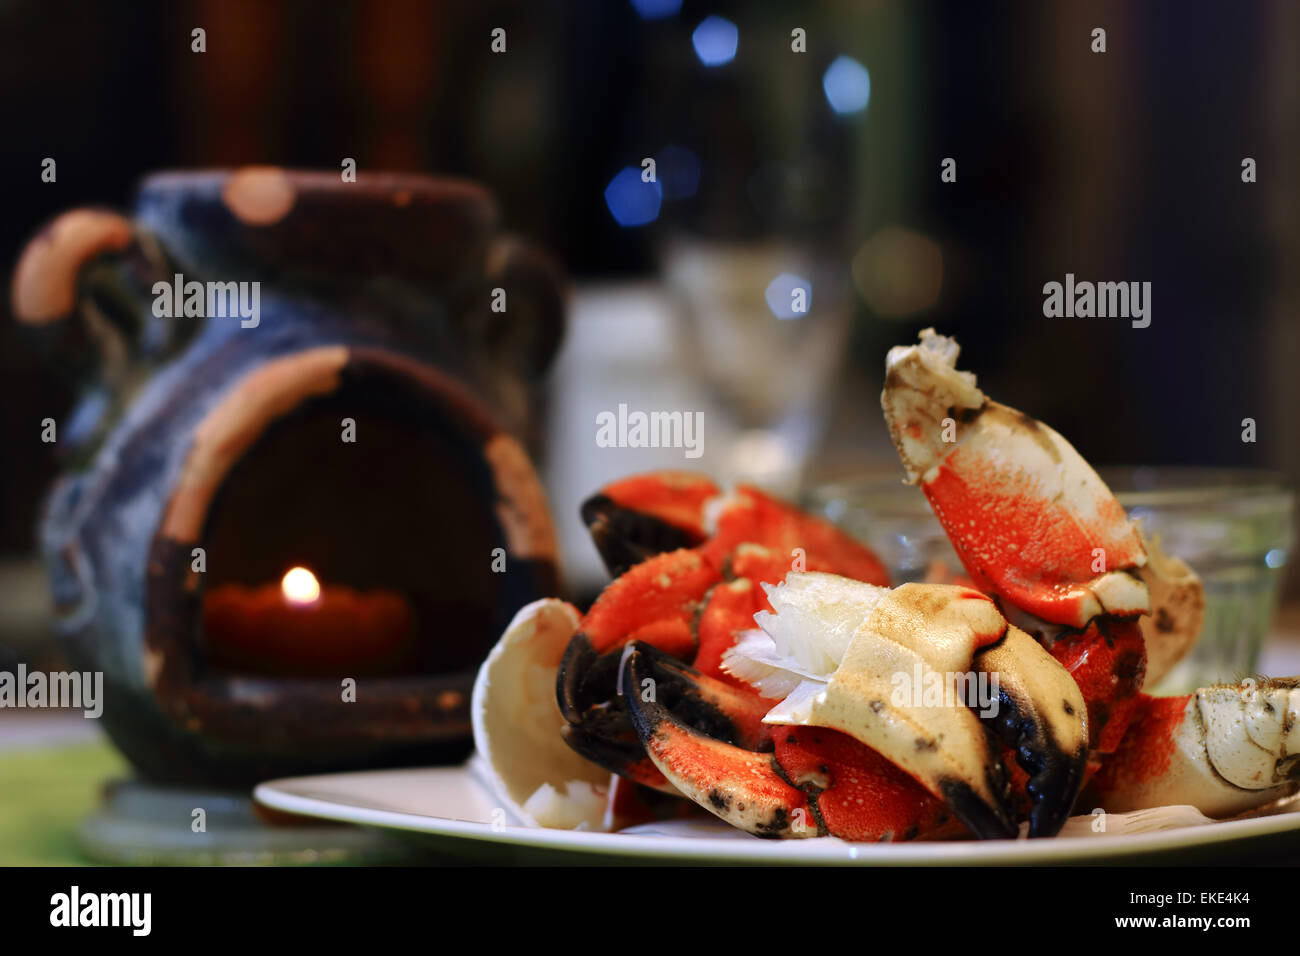 Pinces de crabe Jonah viandes succulentes montrant sur une assiette, avec la lumière de bougie et defocsed flûte en restauration des paramètres. Jonas cr Banque D'Images